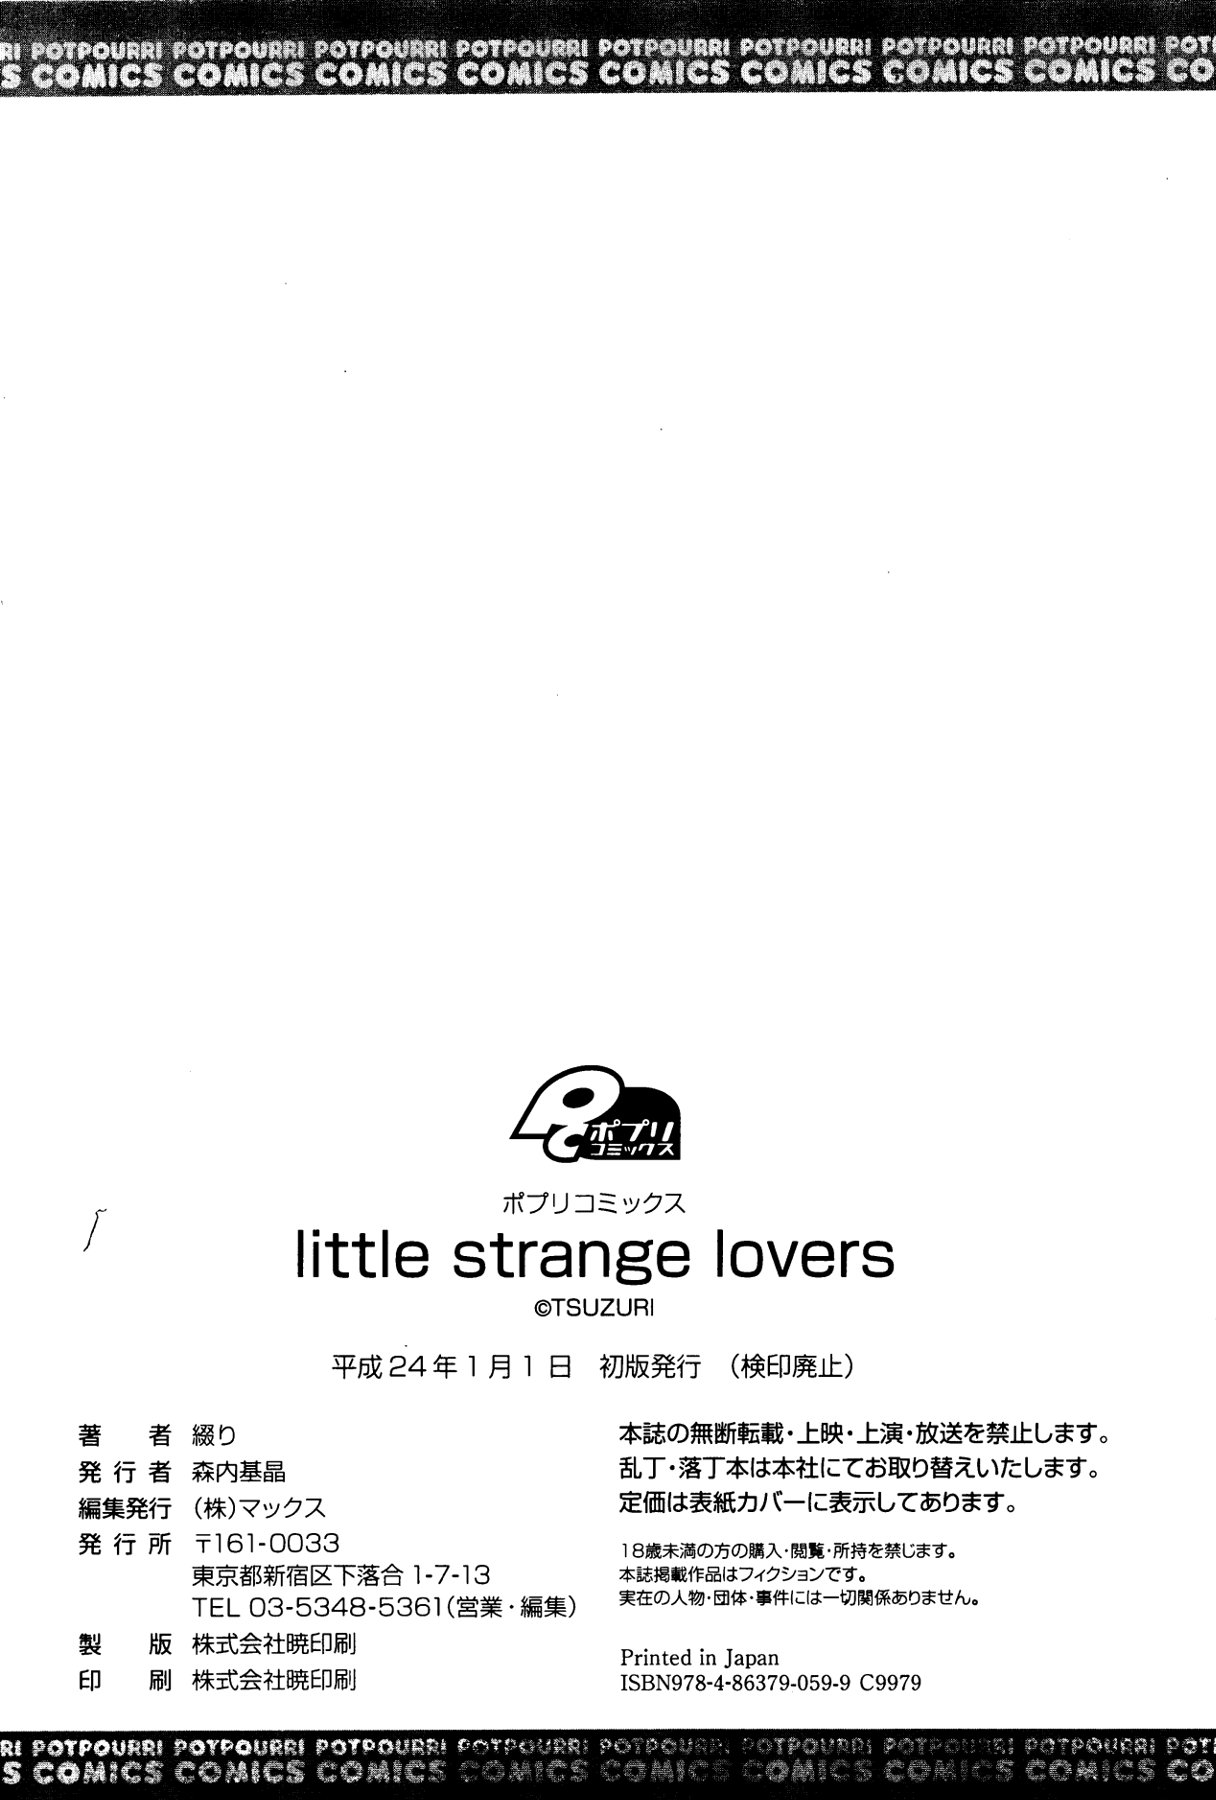 [綴り] little strange lovers